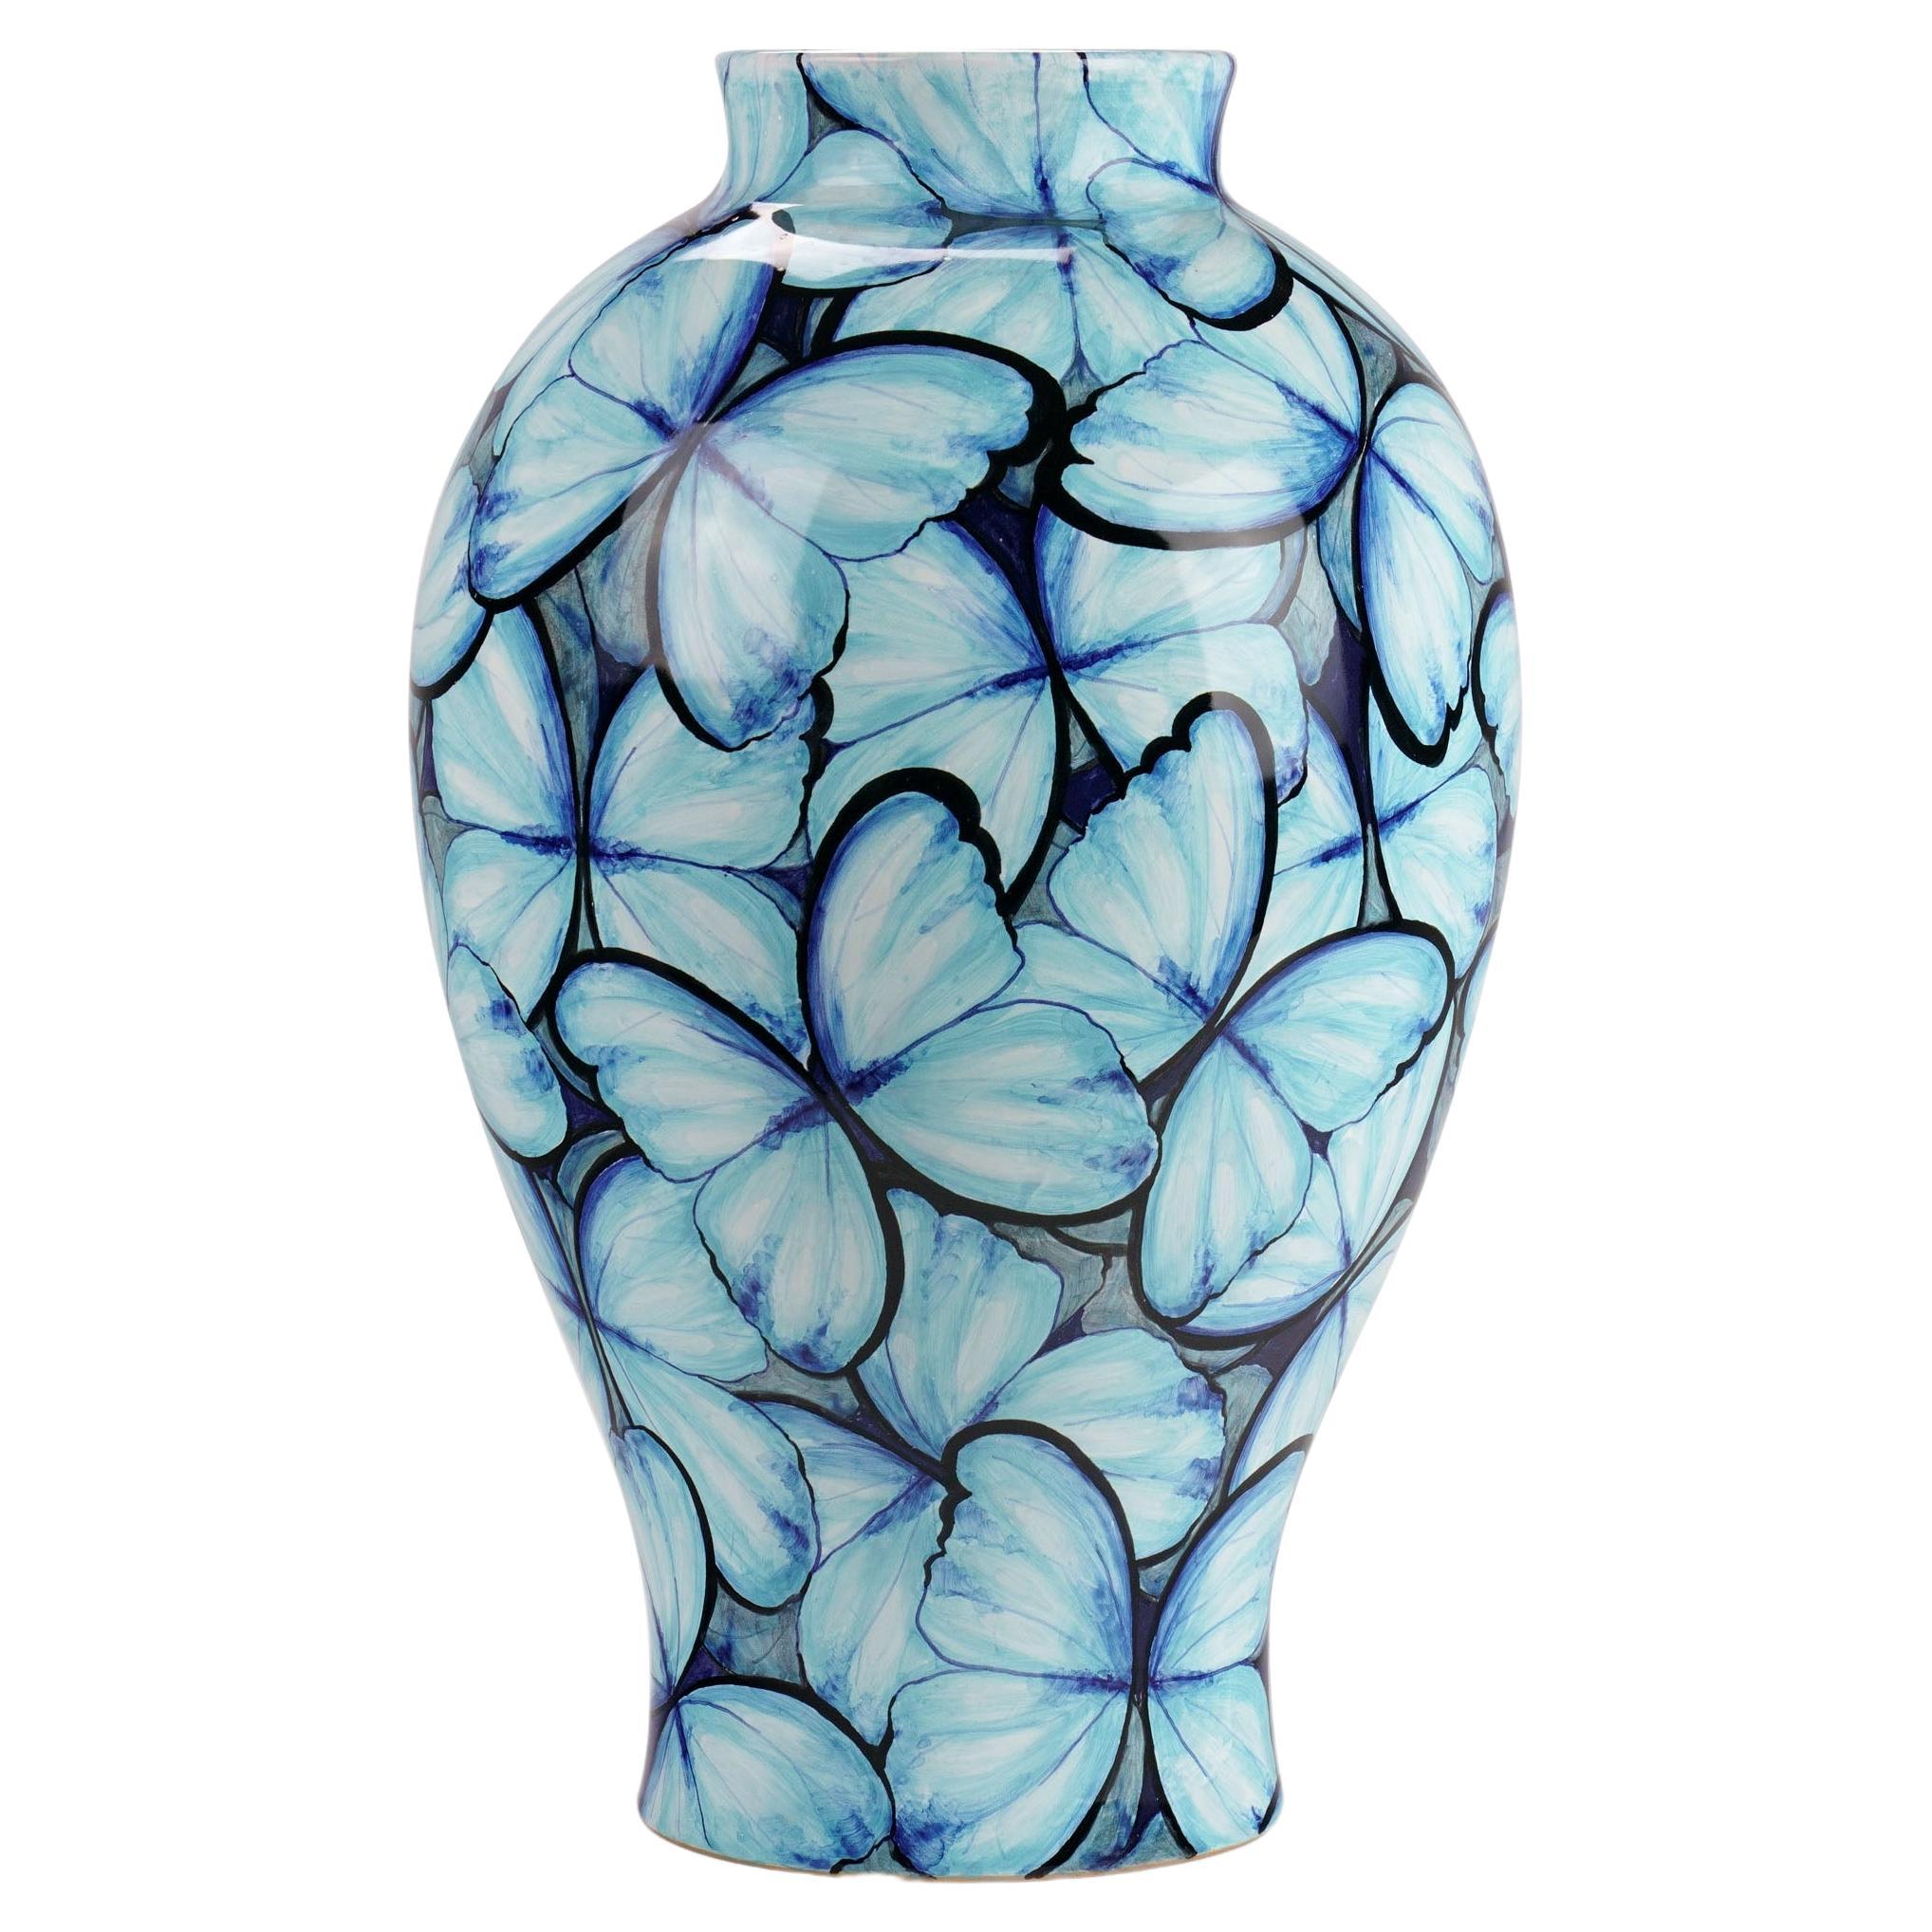 Vase en céramique bleue avec papillons décoratifs peints à la main, Italie